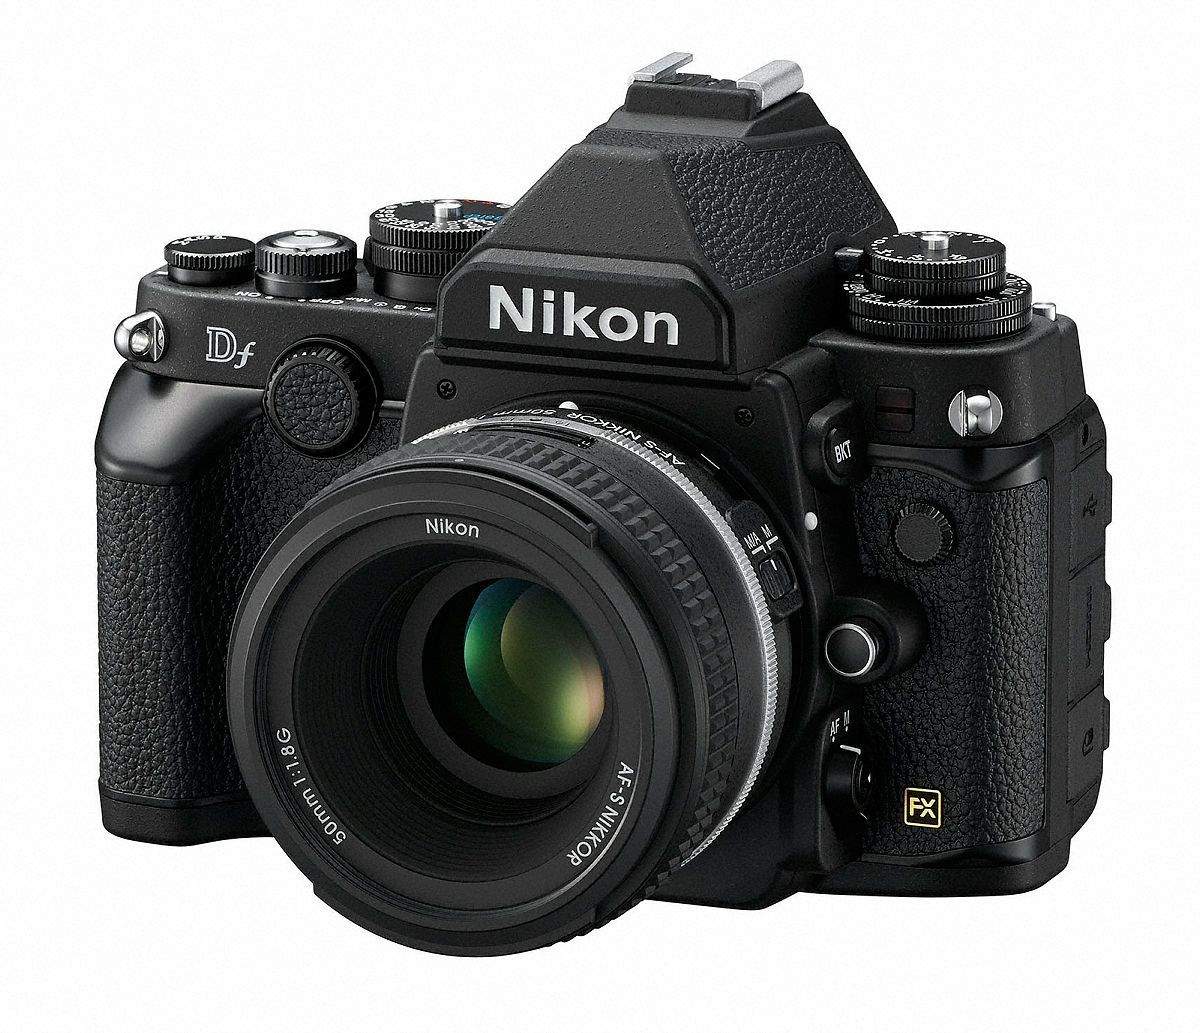 デジタル一眼レフカメラ「Nikon Df」はISO感度や絞り値を専用ダイヤルで設定 - ライブドアニュース